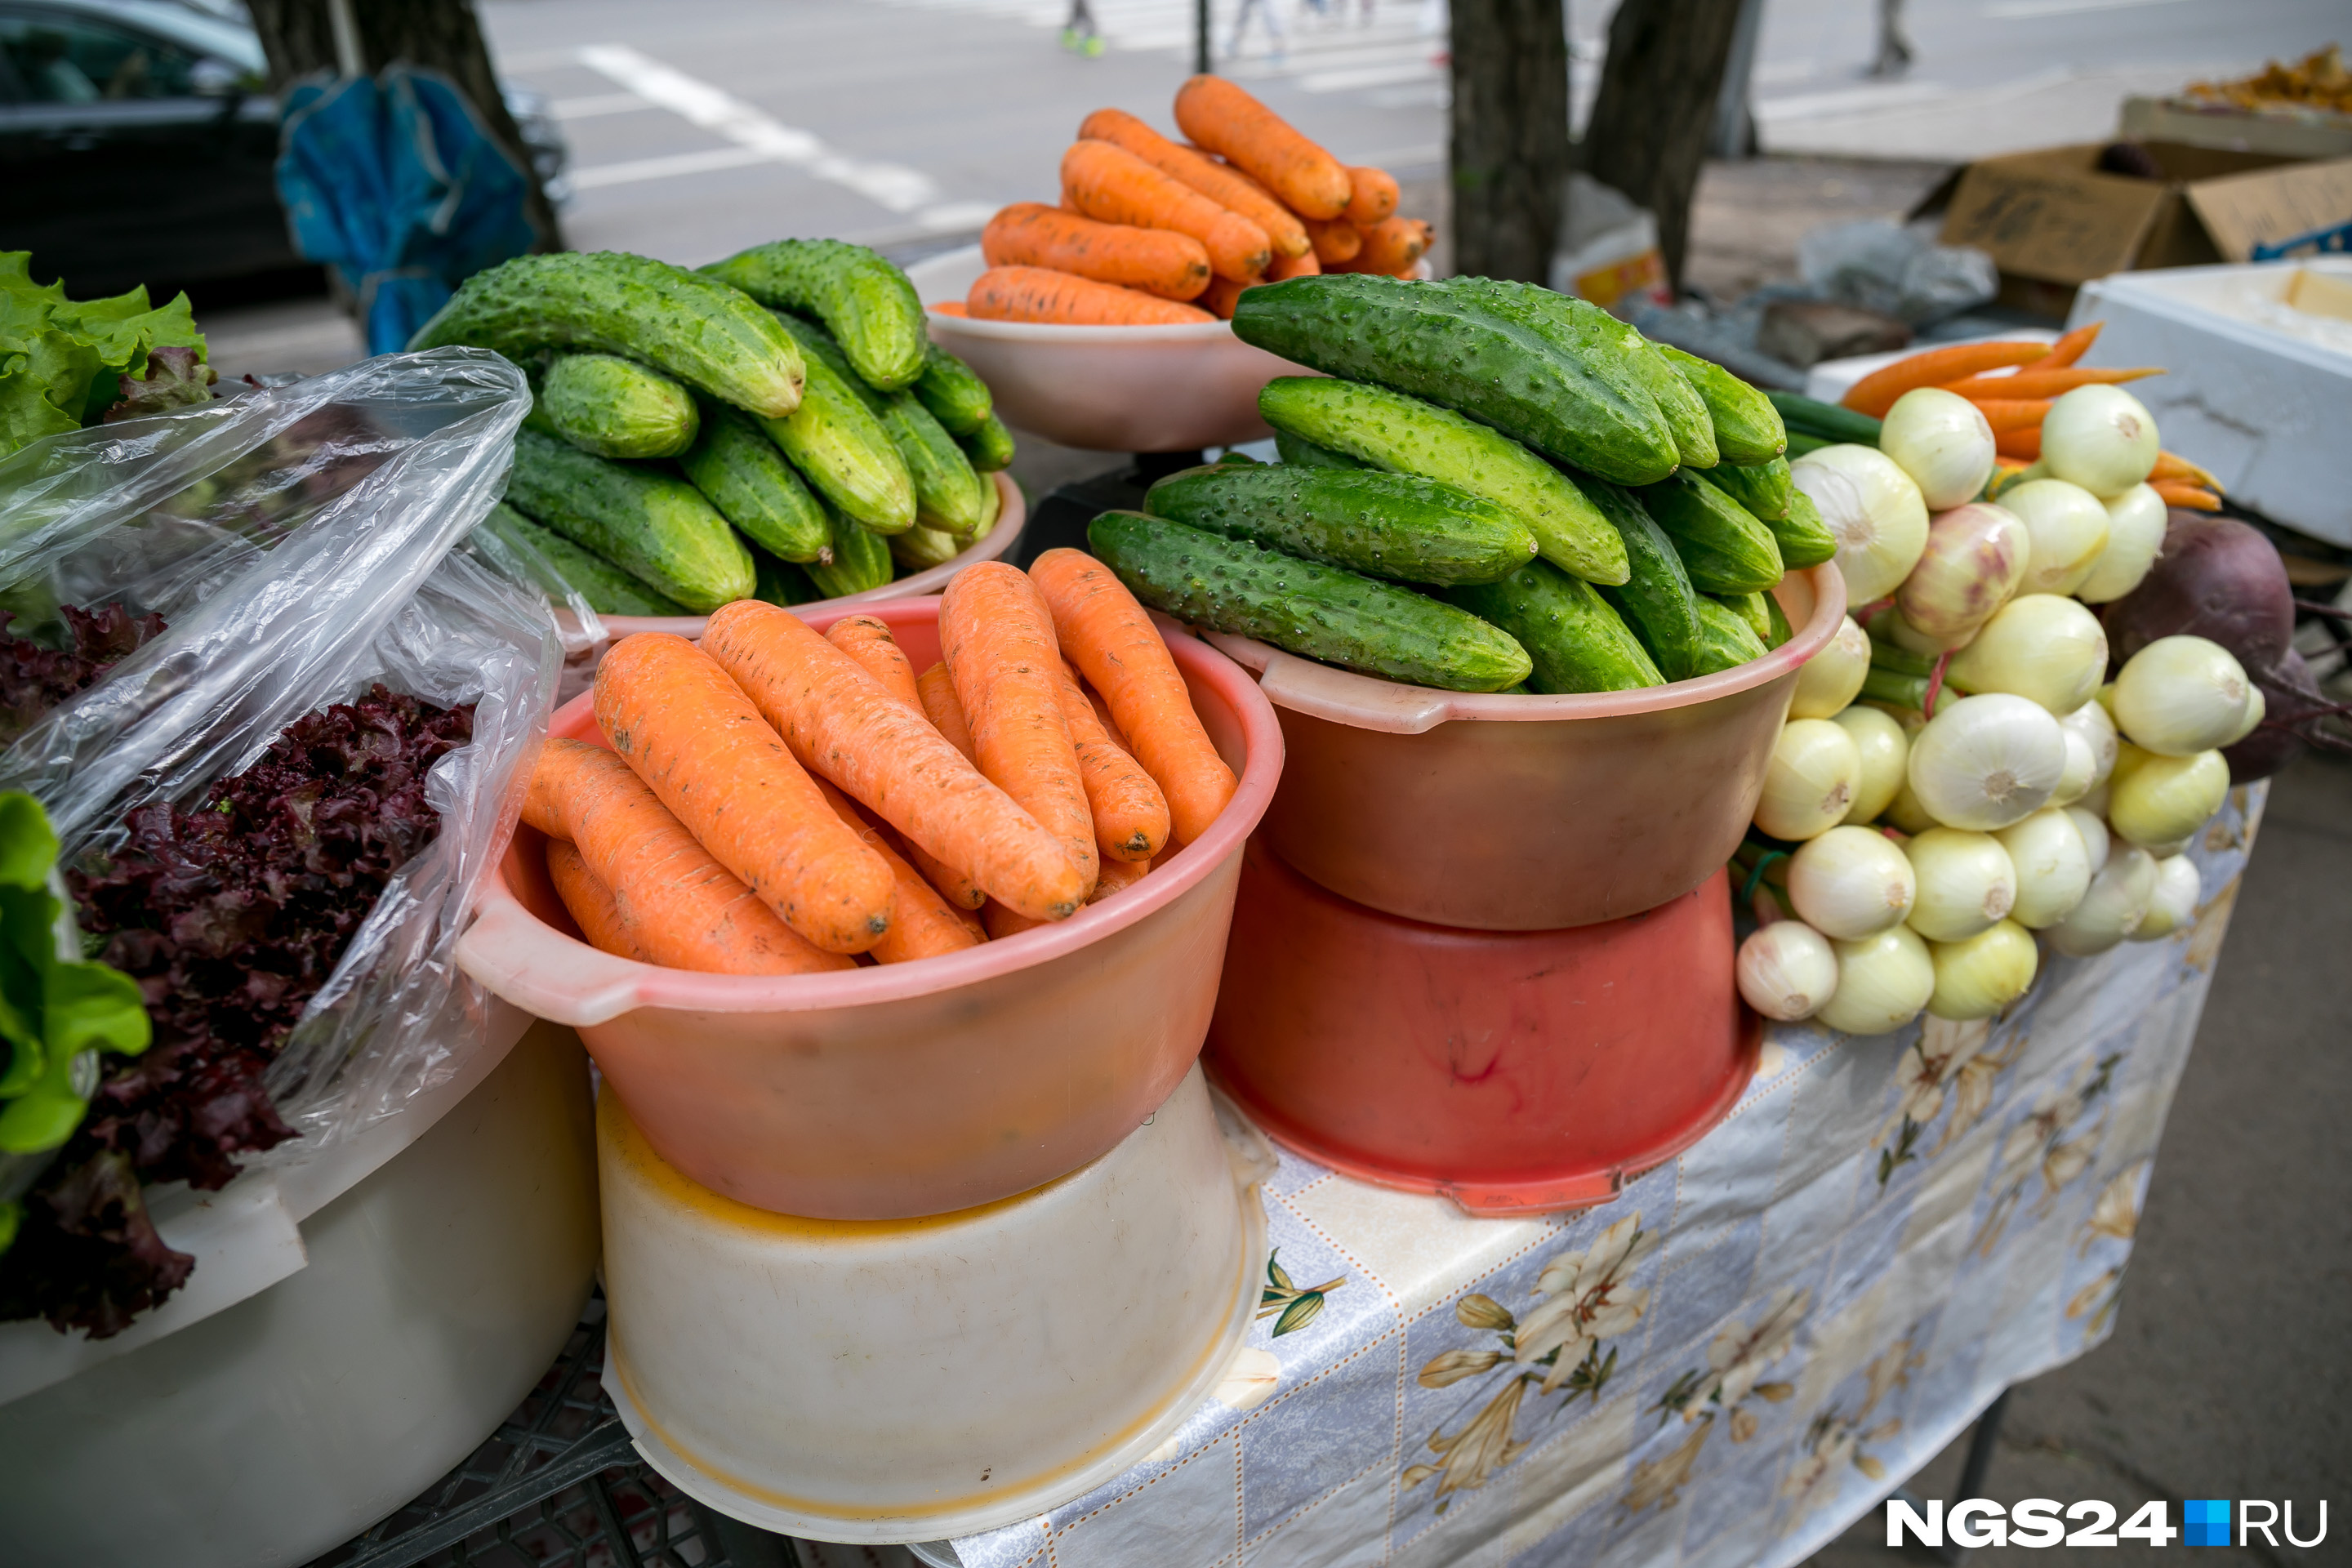 Морковь и огурцы стоят недорого — от 100 до 150 рублей 